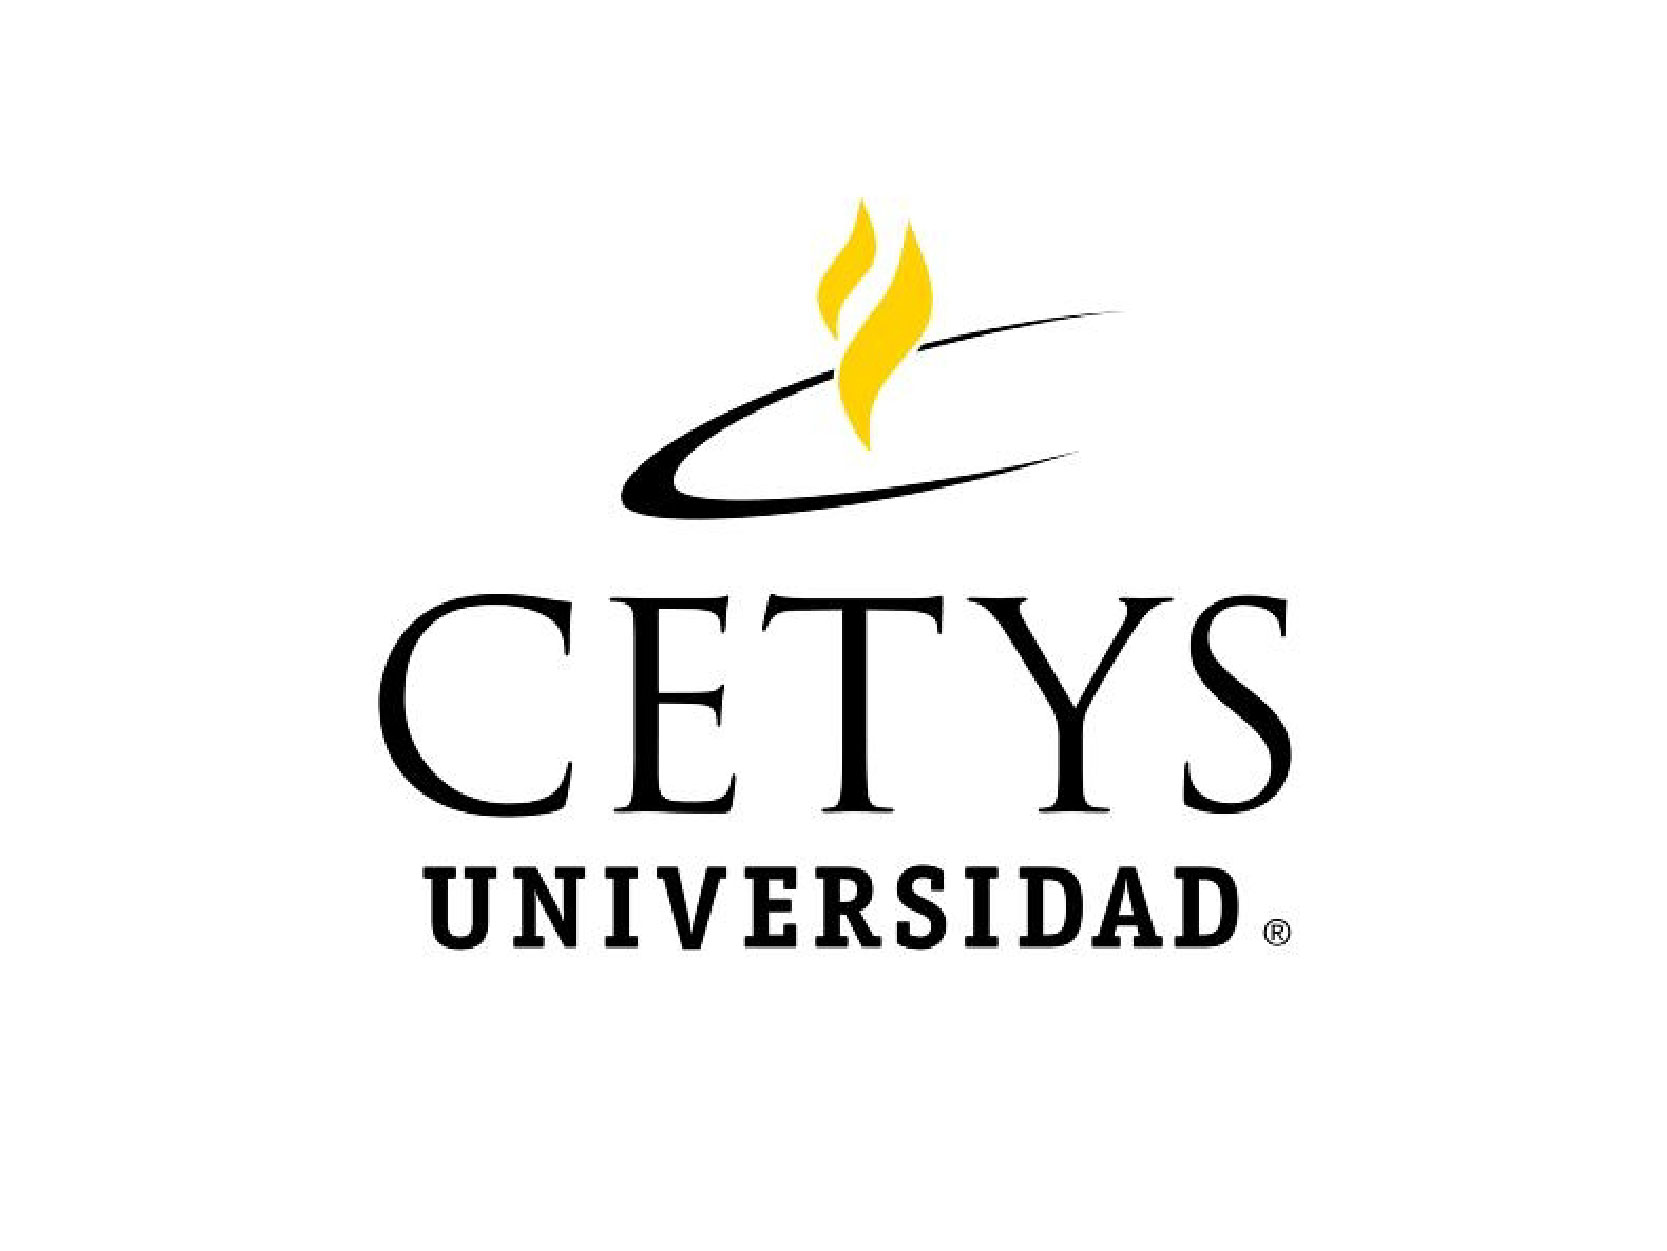 CETYS university logo